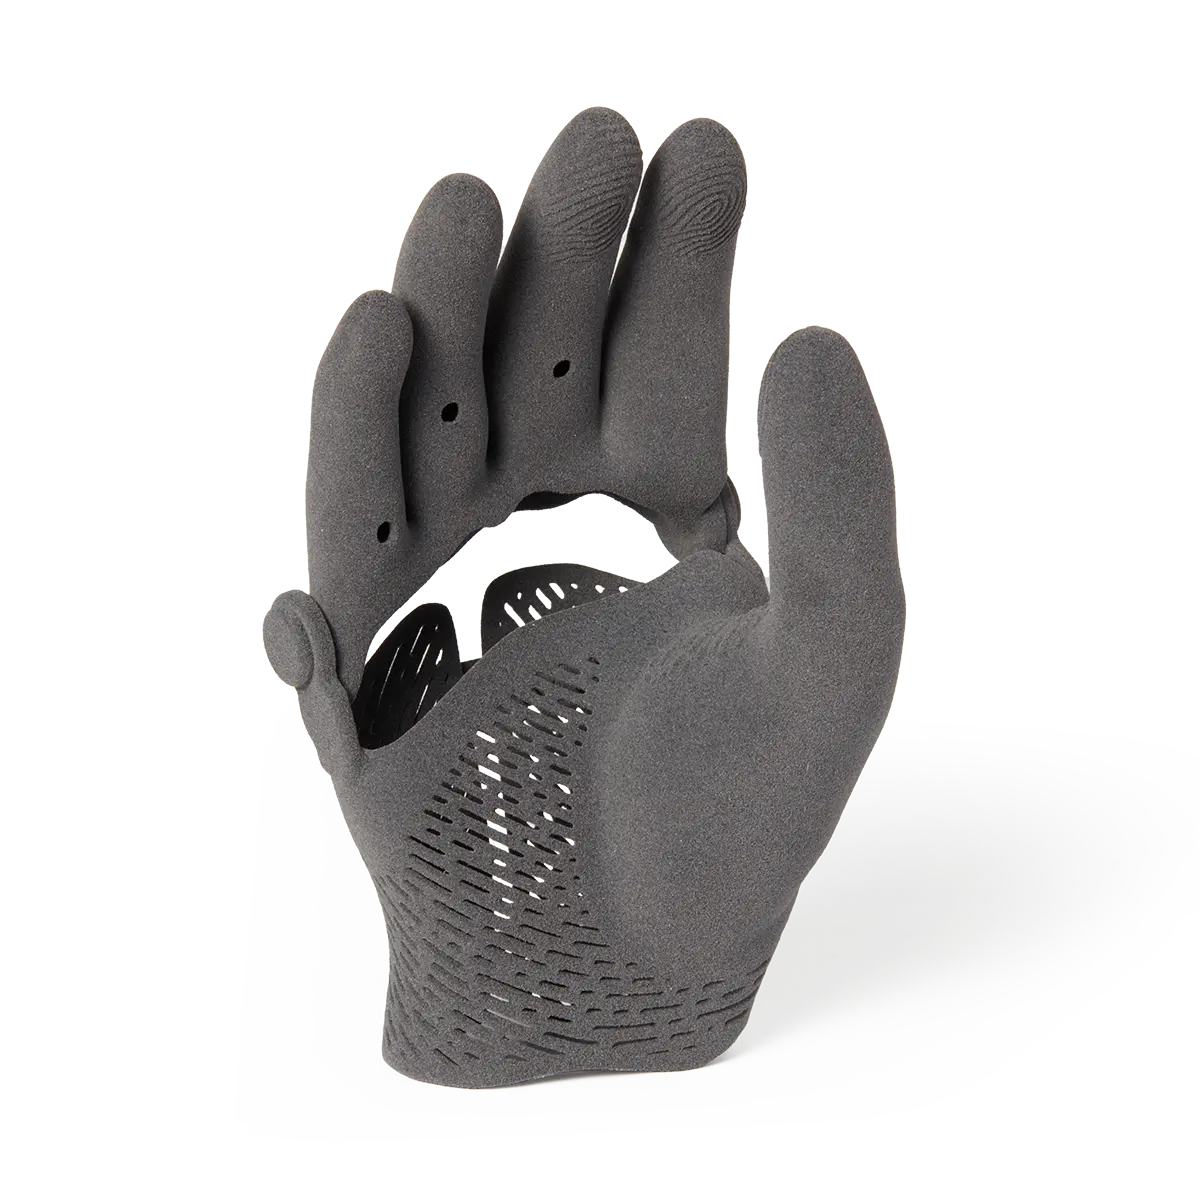 Copertura per protesi di mano stampata in 3D in TPU 90A Powder